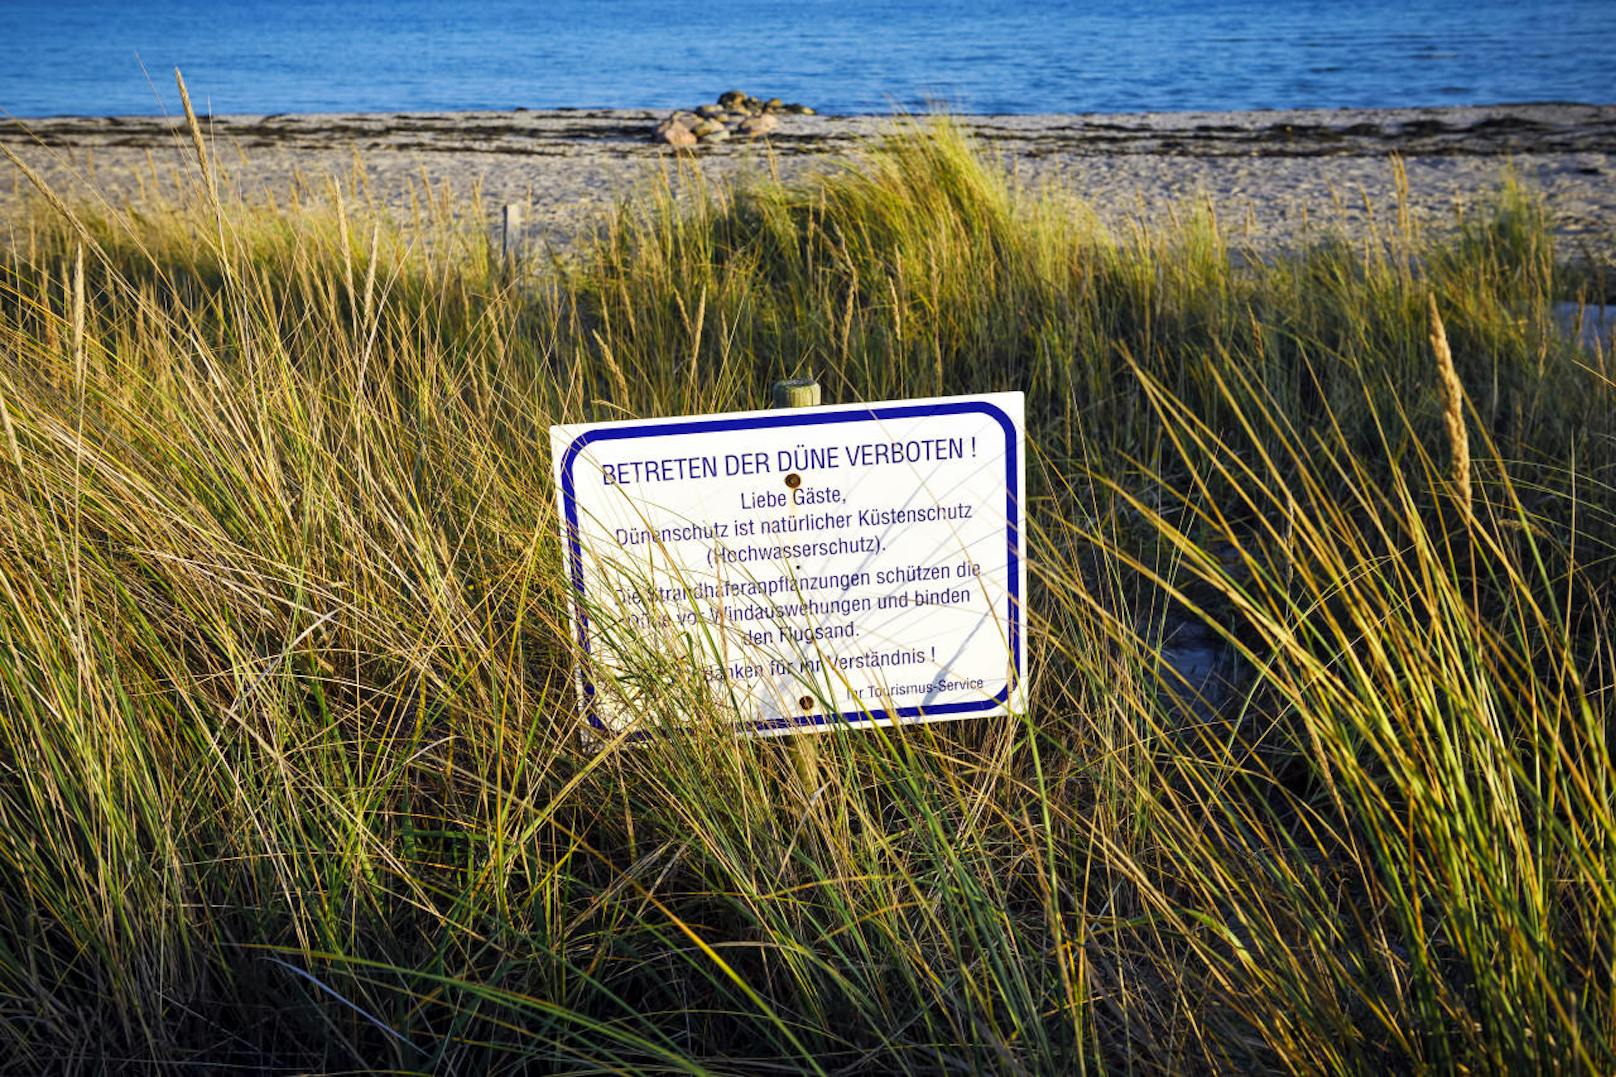 <b>Strandspaziergänge:</b> Durch die Dünen der Nord- oder Ostseeküste darf man nur auf vorgegebenen Wegen spazieren. Das Abkürzen über Sand und Pflanzen ist verboten. Denn Dünen sind nicht nur Lebensraum für Tiere und Pflanzen, sondern dienen auch dem Küstenschutz.